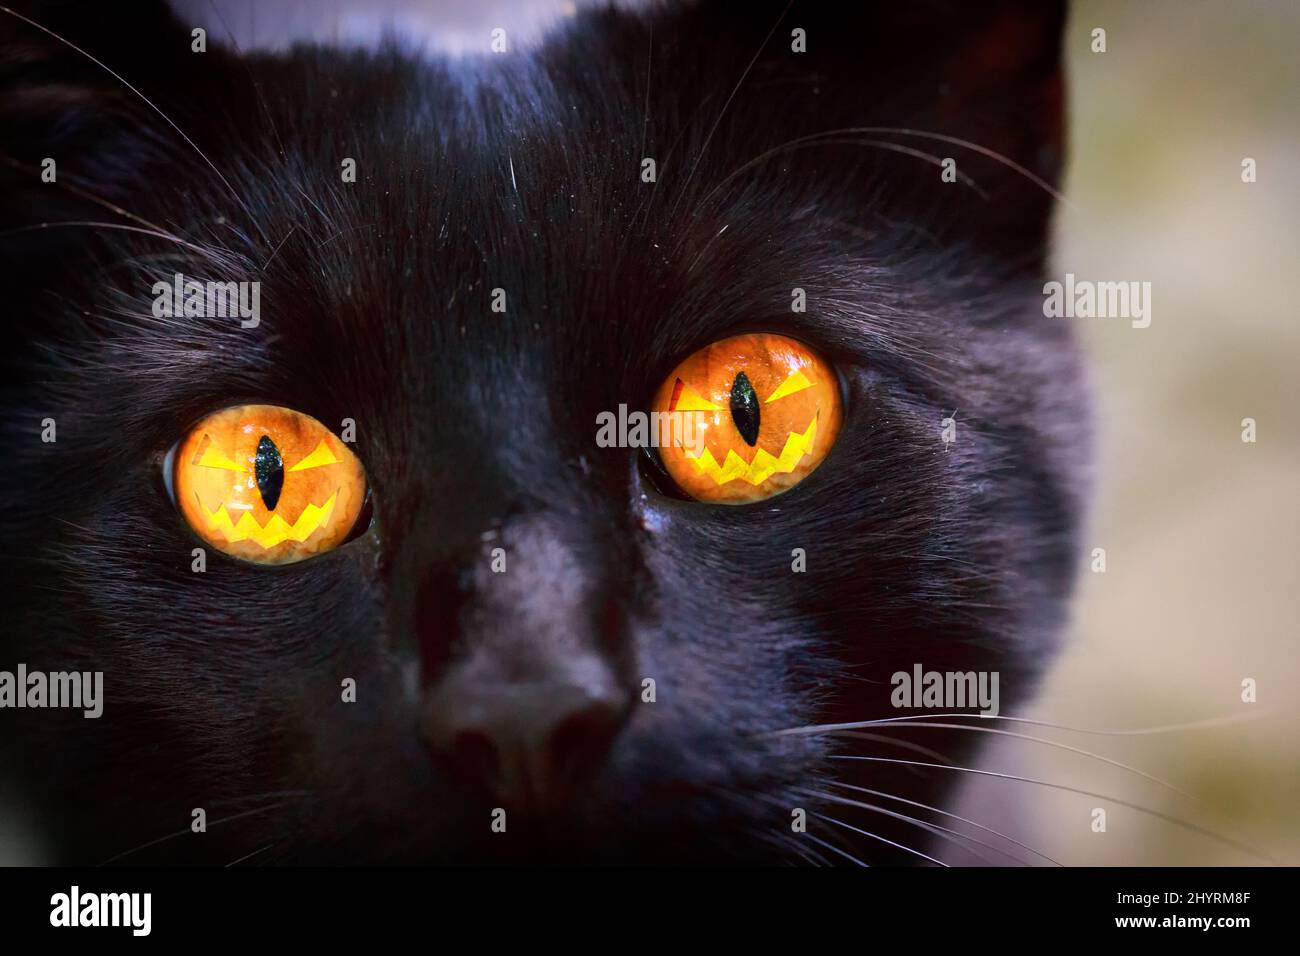 HalloKitty - Halloween Cat - Halloween Katze - Katze mit einem Halloween Kürbis in den Augen - CatEye, cat eye, Katzenauge, Black Cat, schwarze Katze Stock Photo